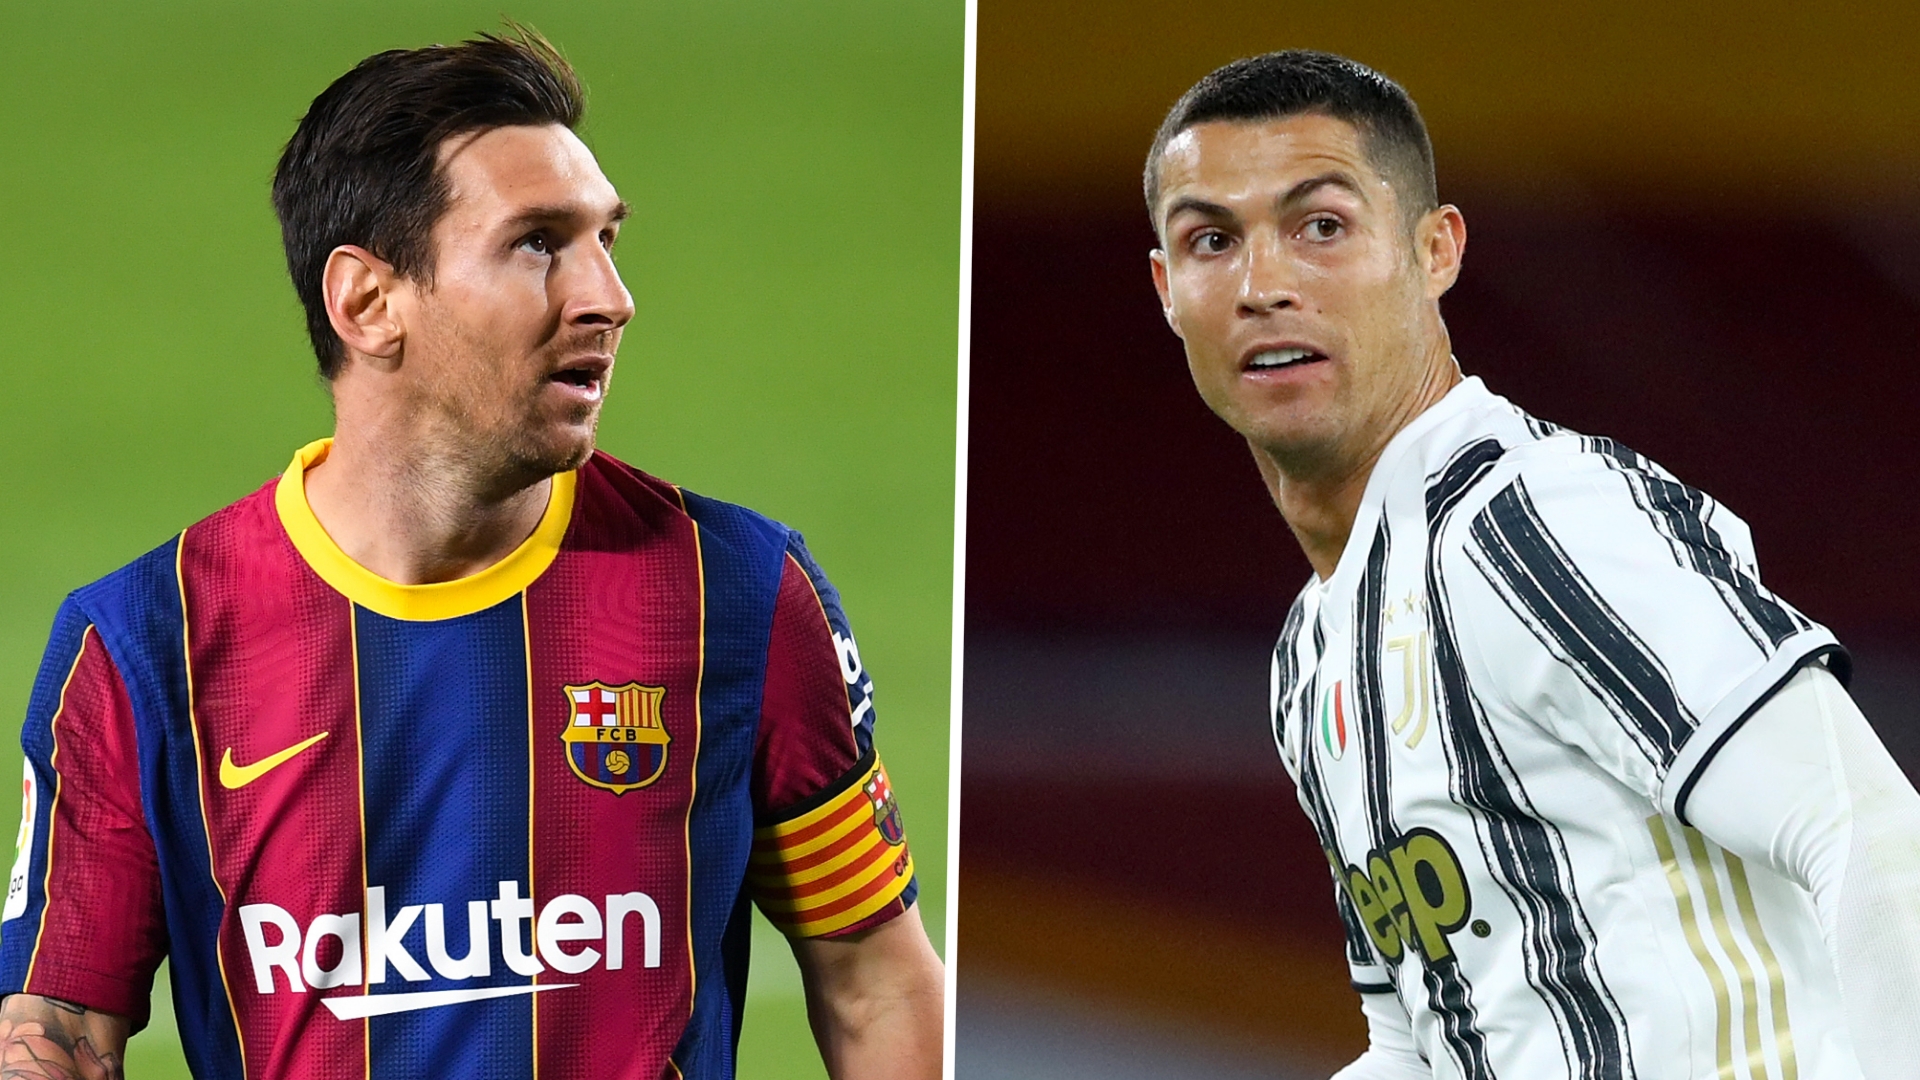 “Messi se soigne comme un Athlète Normal, Ronaldo est extraordinaire”